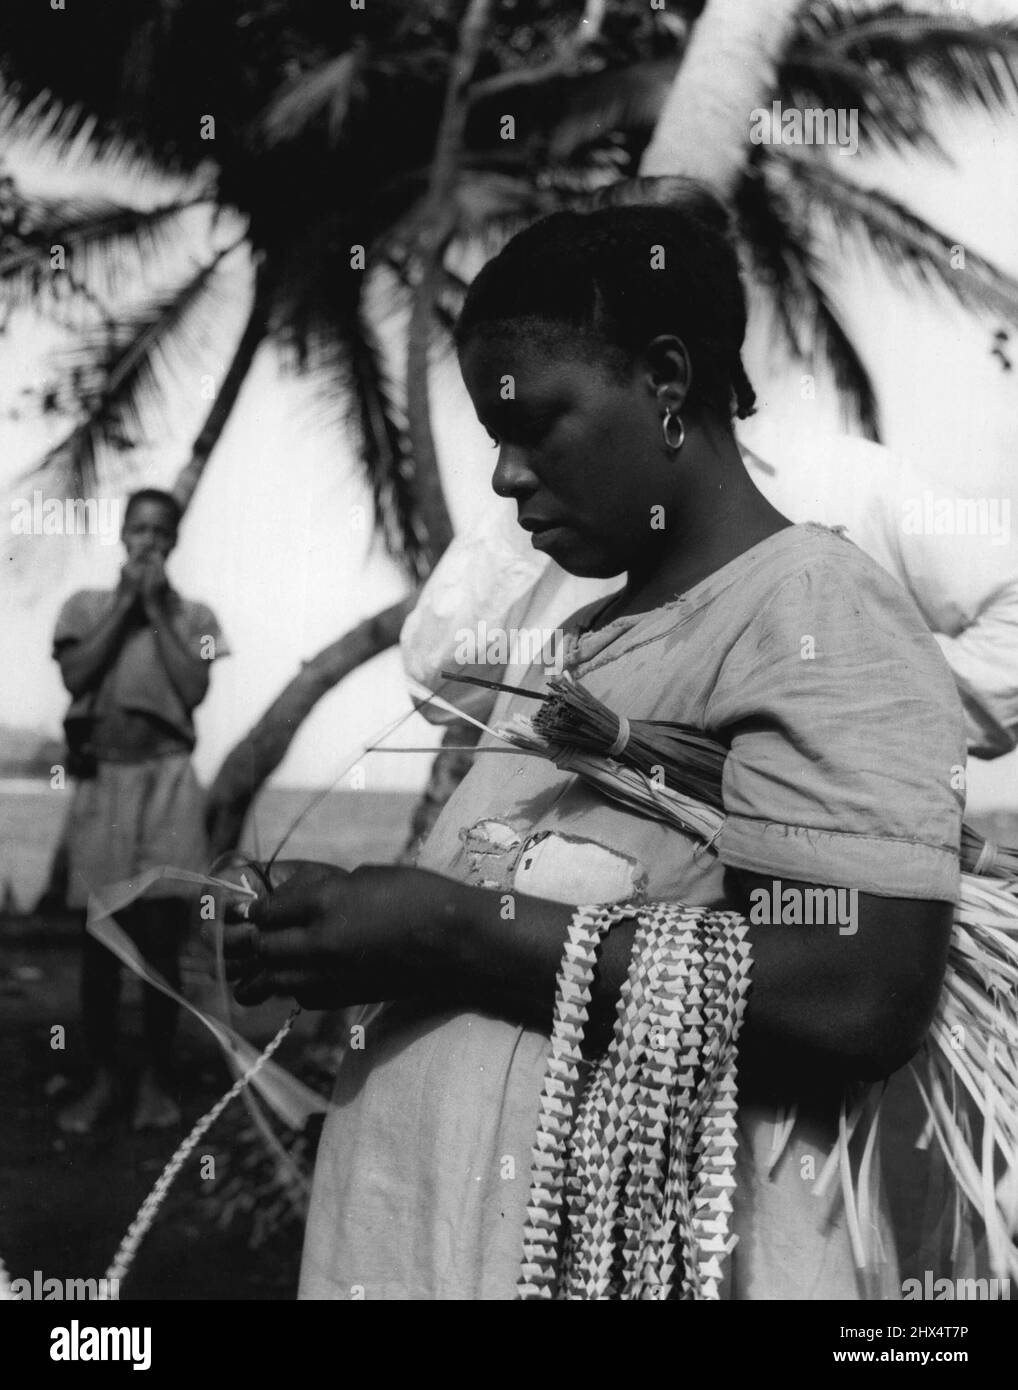 Le dita occupate di Grenada tengono fuori il Sole. Le loro dita lavorano con estrema rapidità intrecciando le strisce di pino selvatico, solitamente in due colori. Luglio 11, 1951. (Foto dell'Ufficio Centrale delle informazioni). Foto Stock